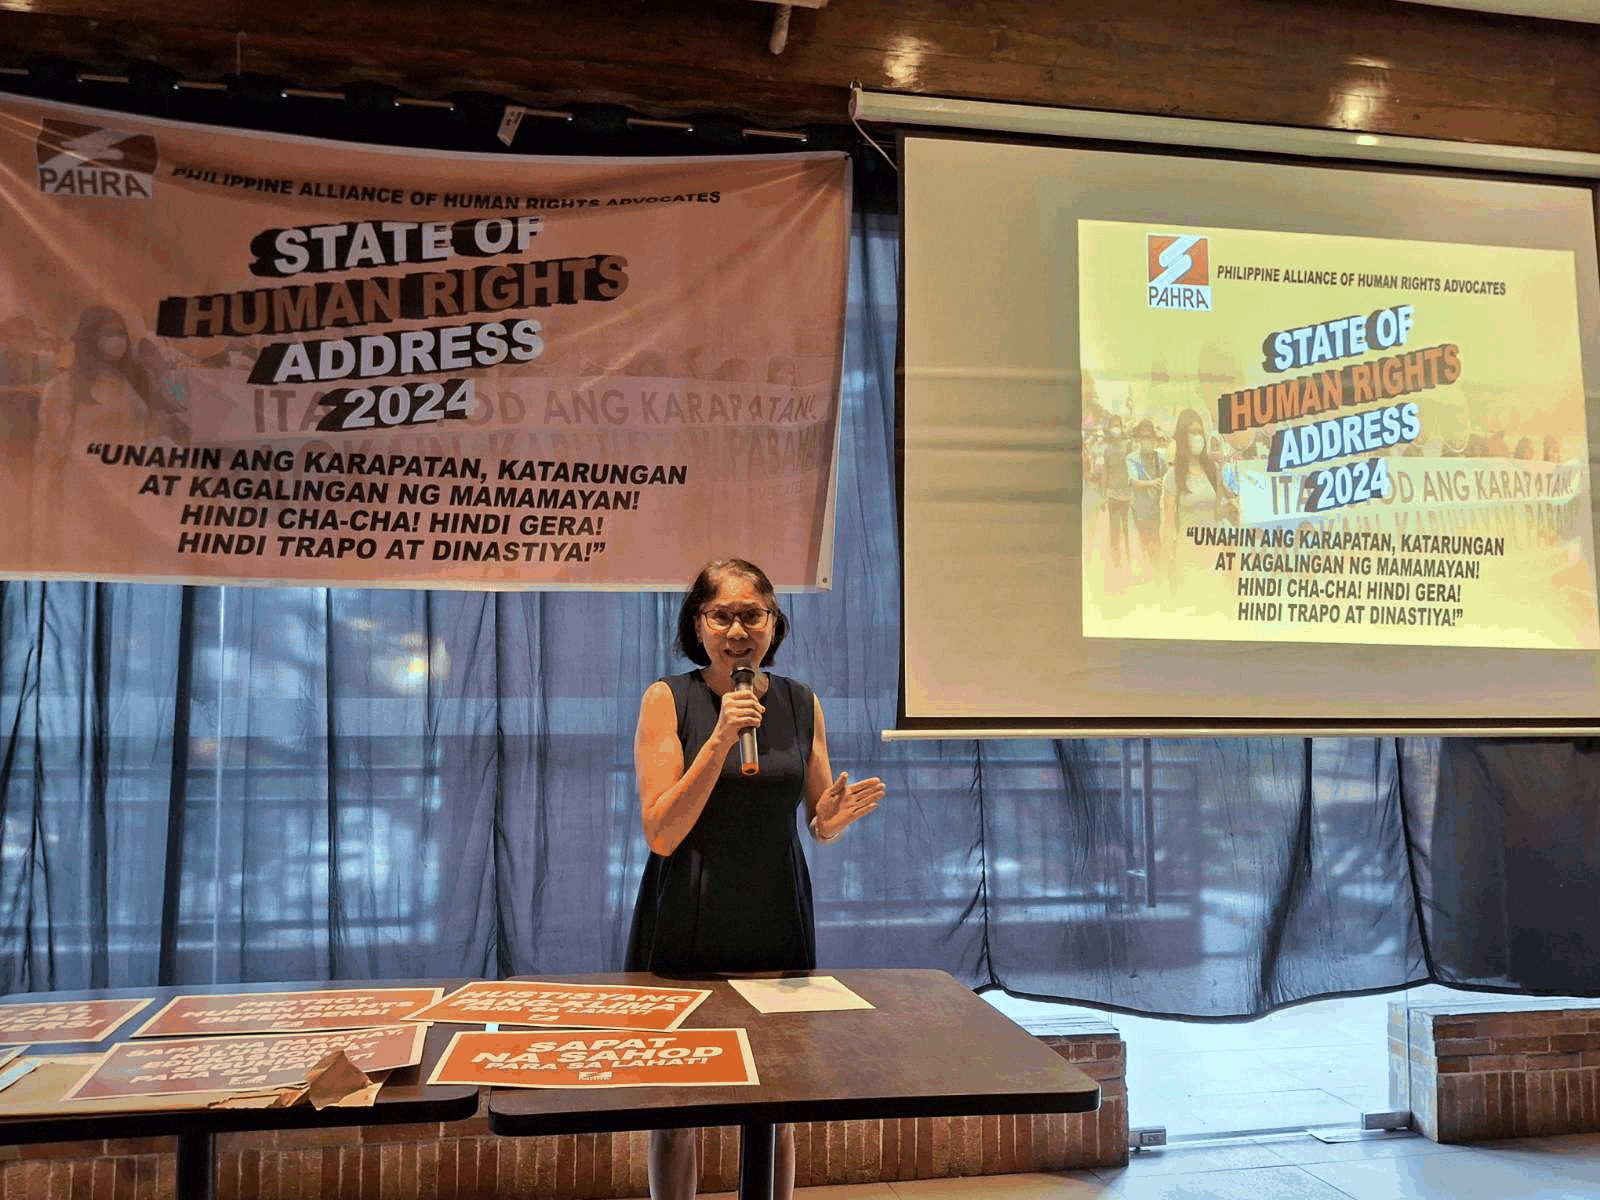 No change despite ‘Bagong Pilipinas’ rebranding – human rights groups